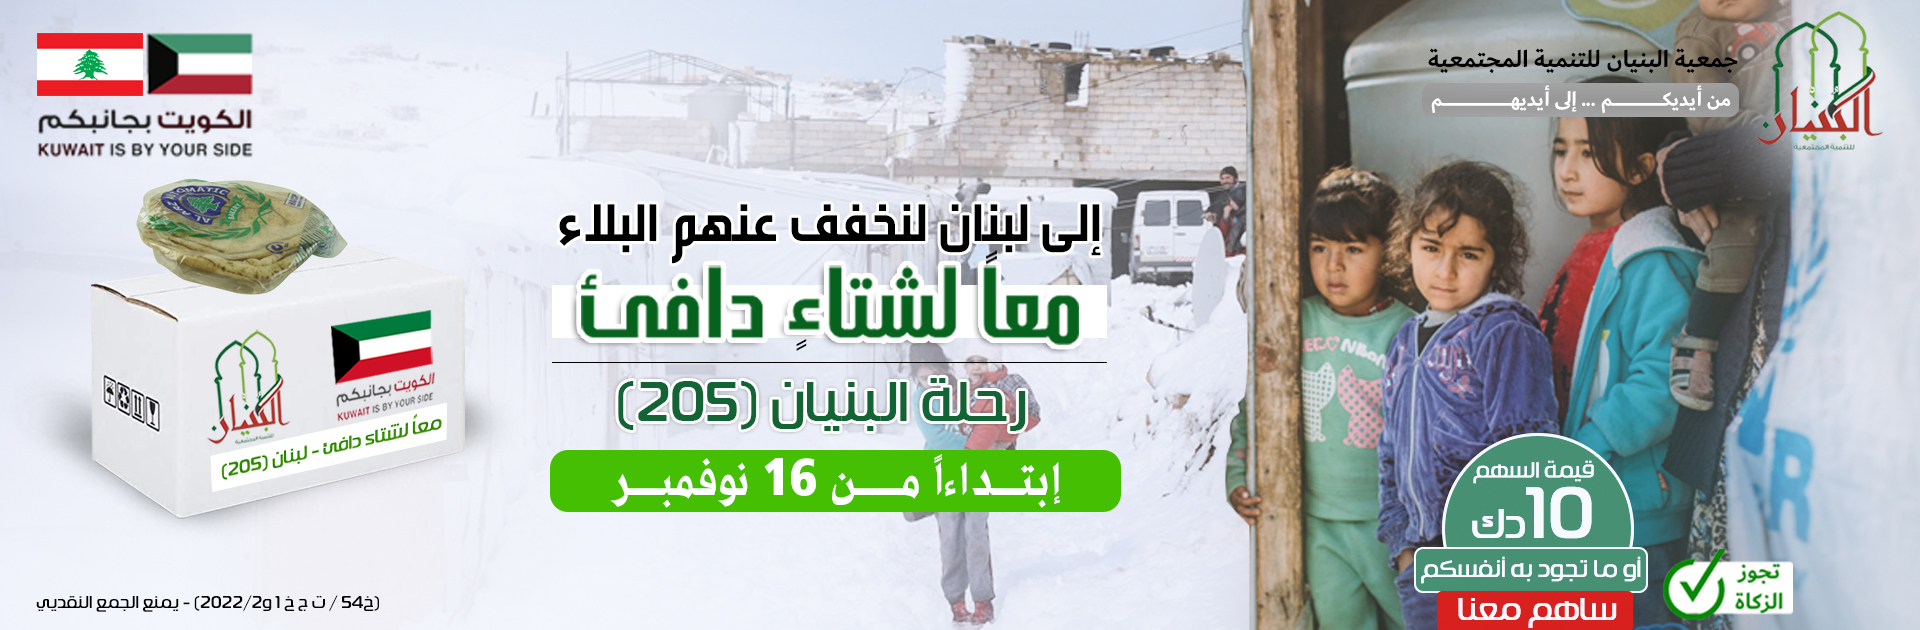 لبنان 205 ويب